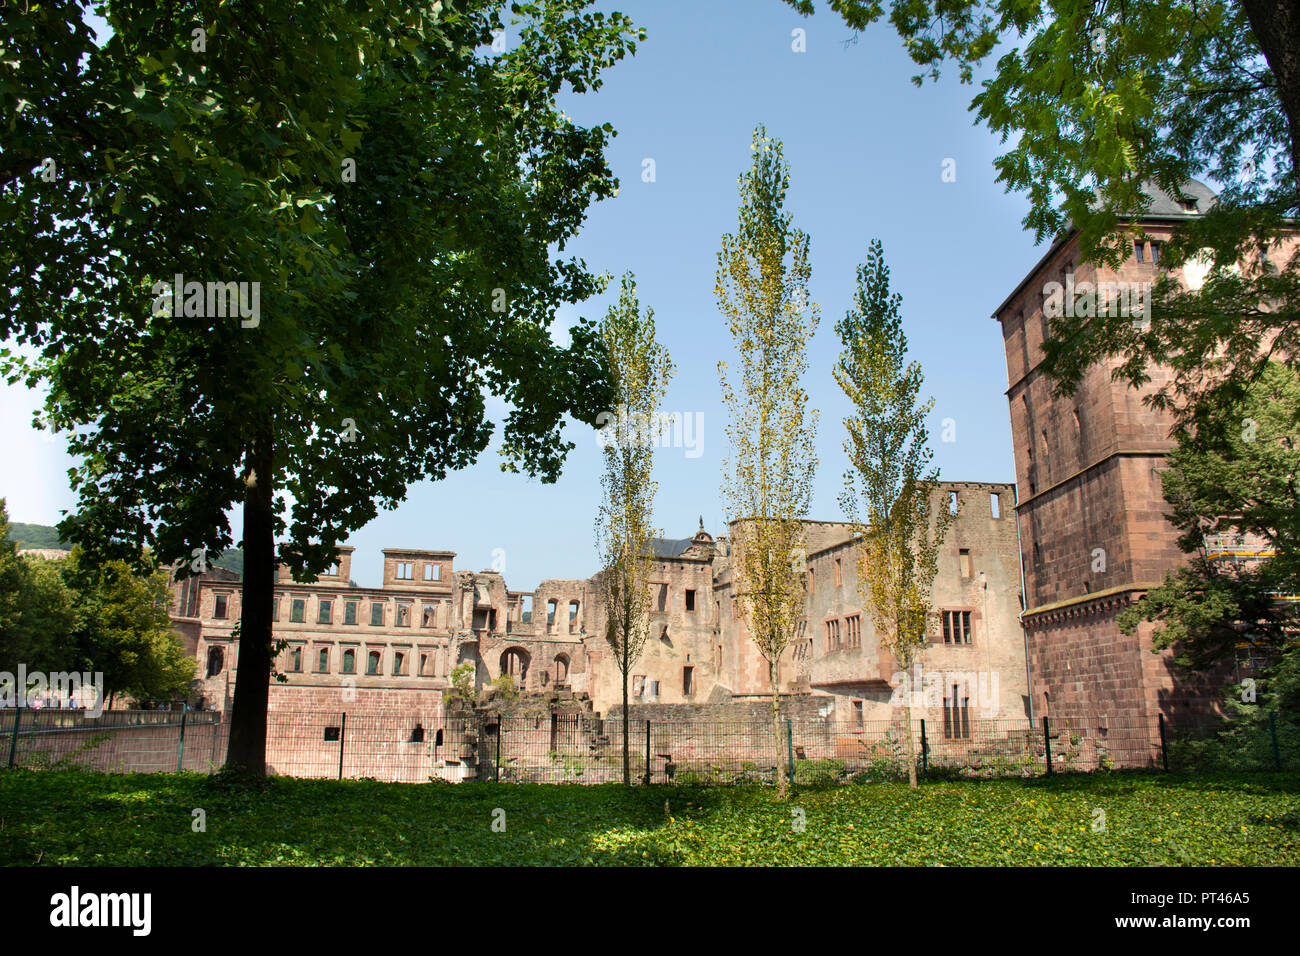 Popolo tedesco e foriegner viaggiatori in visita a piedi e i viaggi all'interno del castello di Heidelberg e il tedesco chiamato Heidelberger Schloss è una rovina e landma Foto Stock